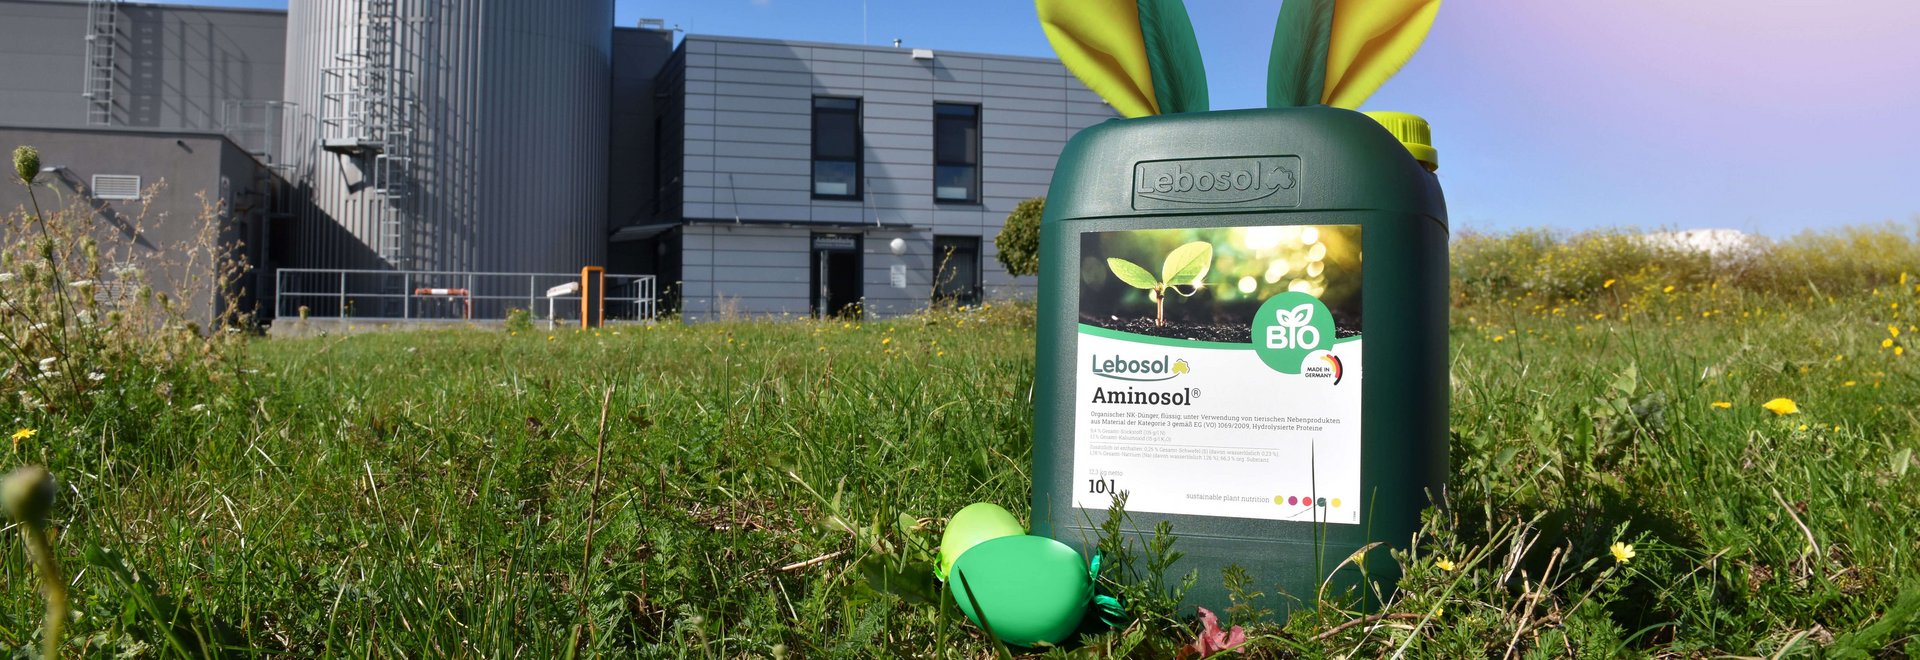 Ein grüner 10 Liter Kanister von Lebosol® mit Aminosol® Etikette steht auf einer grünen Wiese vor einem Gebäude. Der Kanister hat Hasenohren